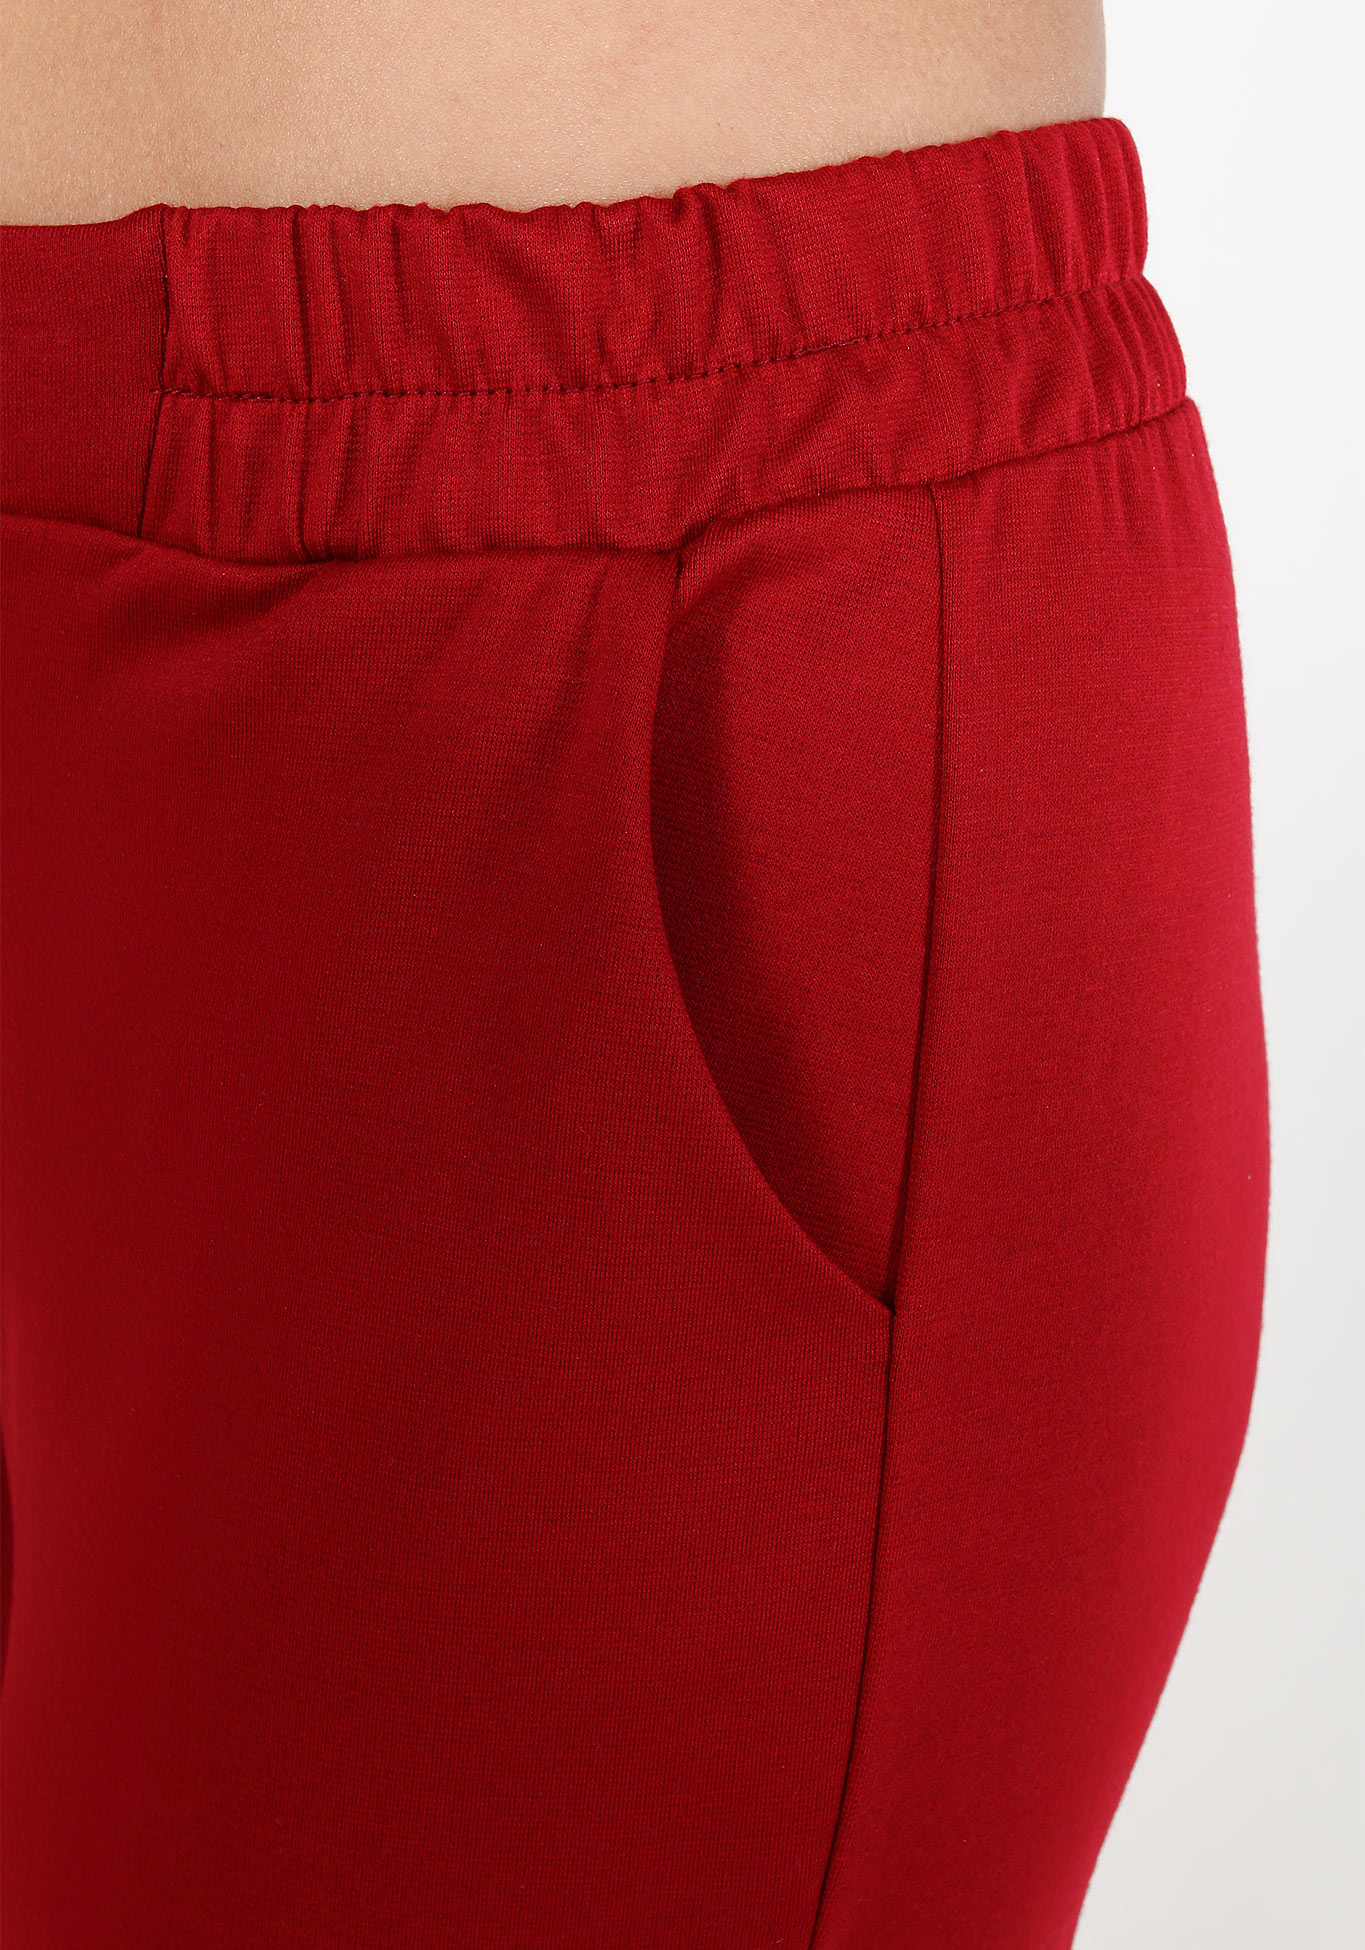 Брюки на резинке с боковыми карманами Bianka Modeno, размер 52, цвет красный - фото 4